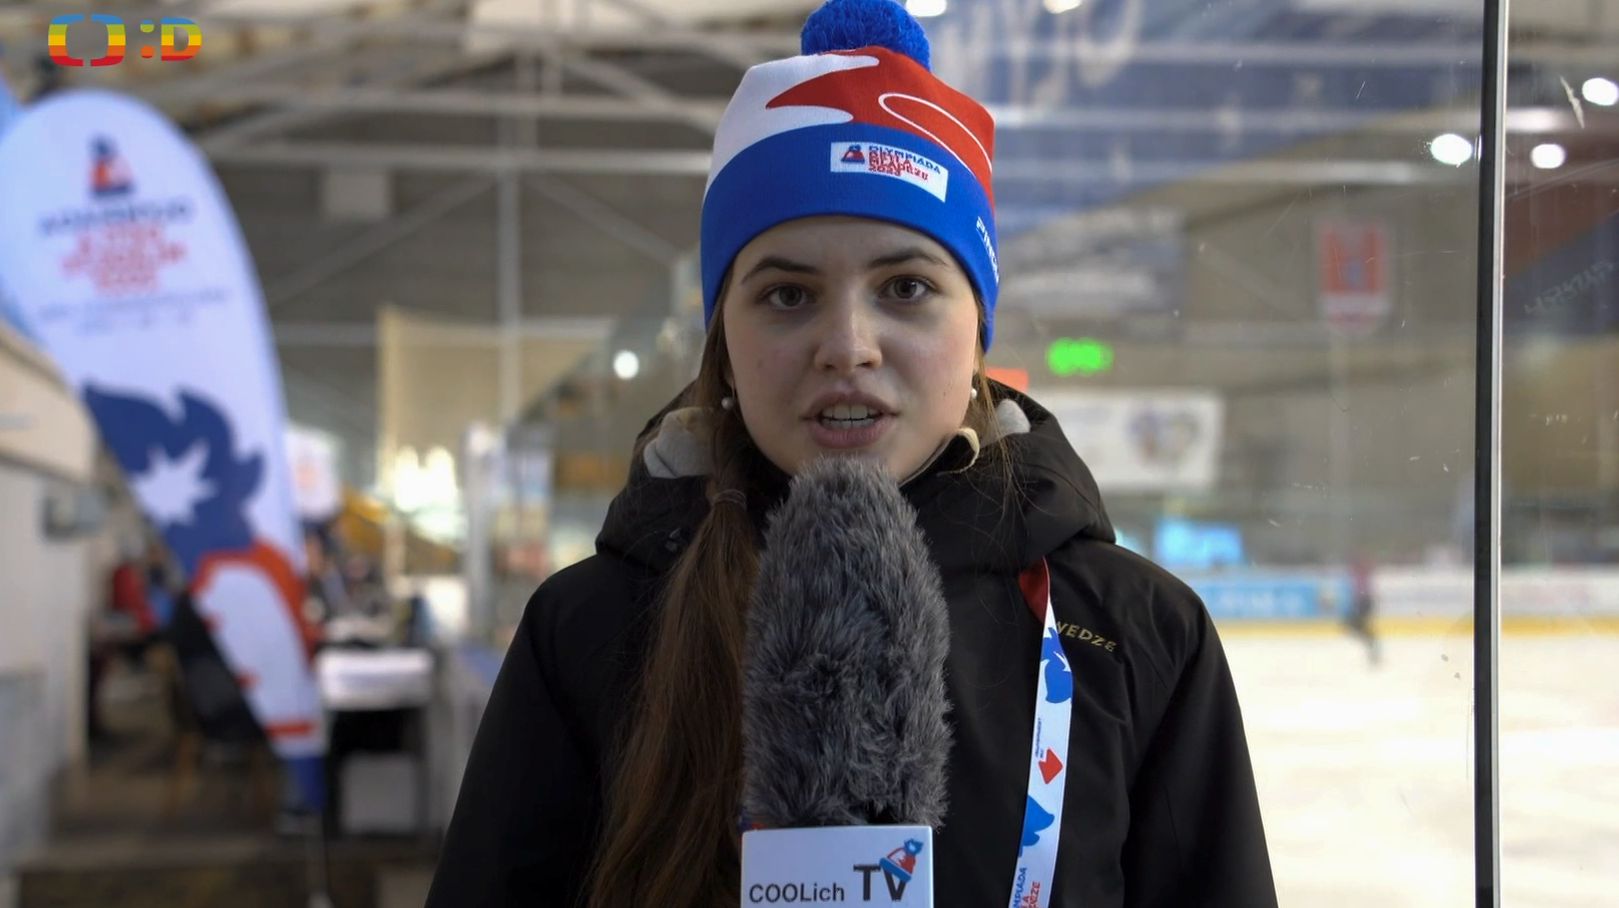 Studentská televize COOlich TV vysílala denní zpravodajství z olympiády